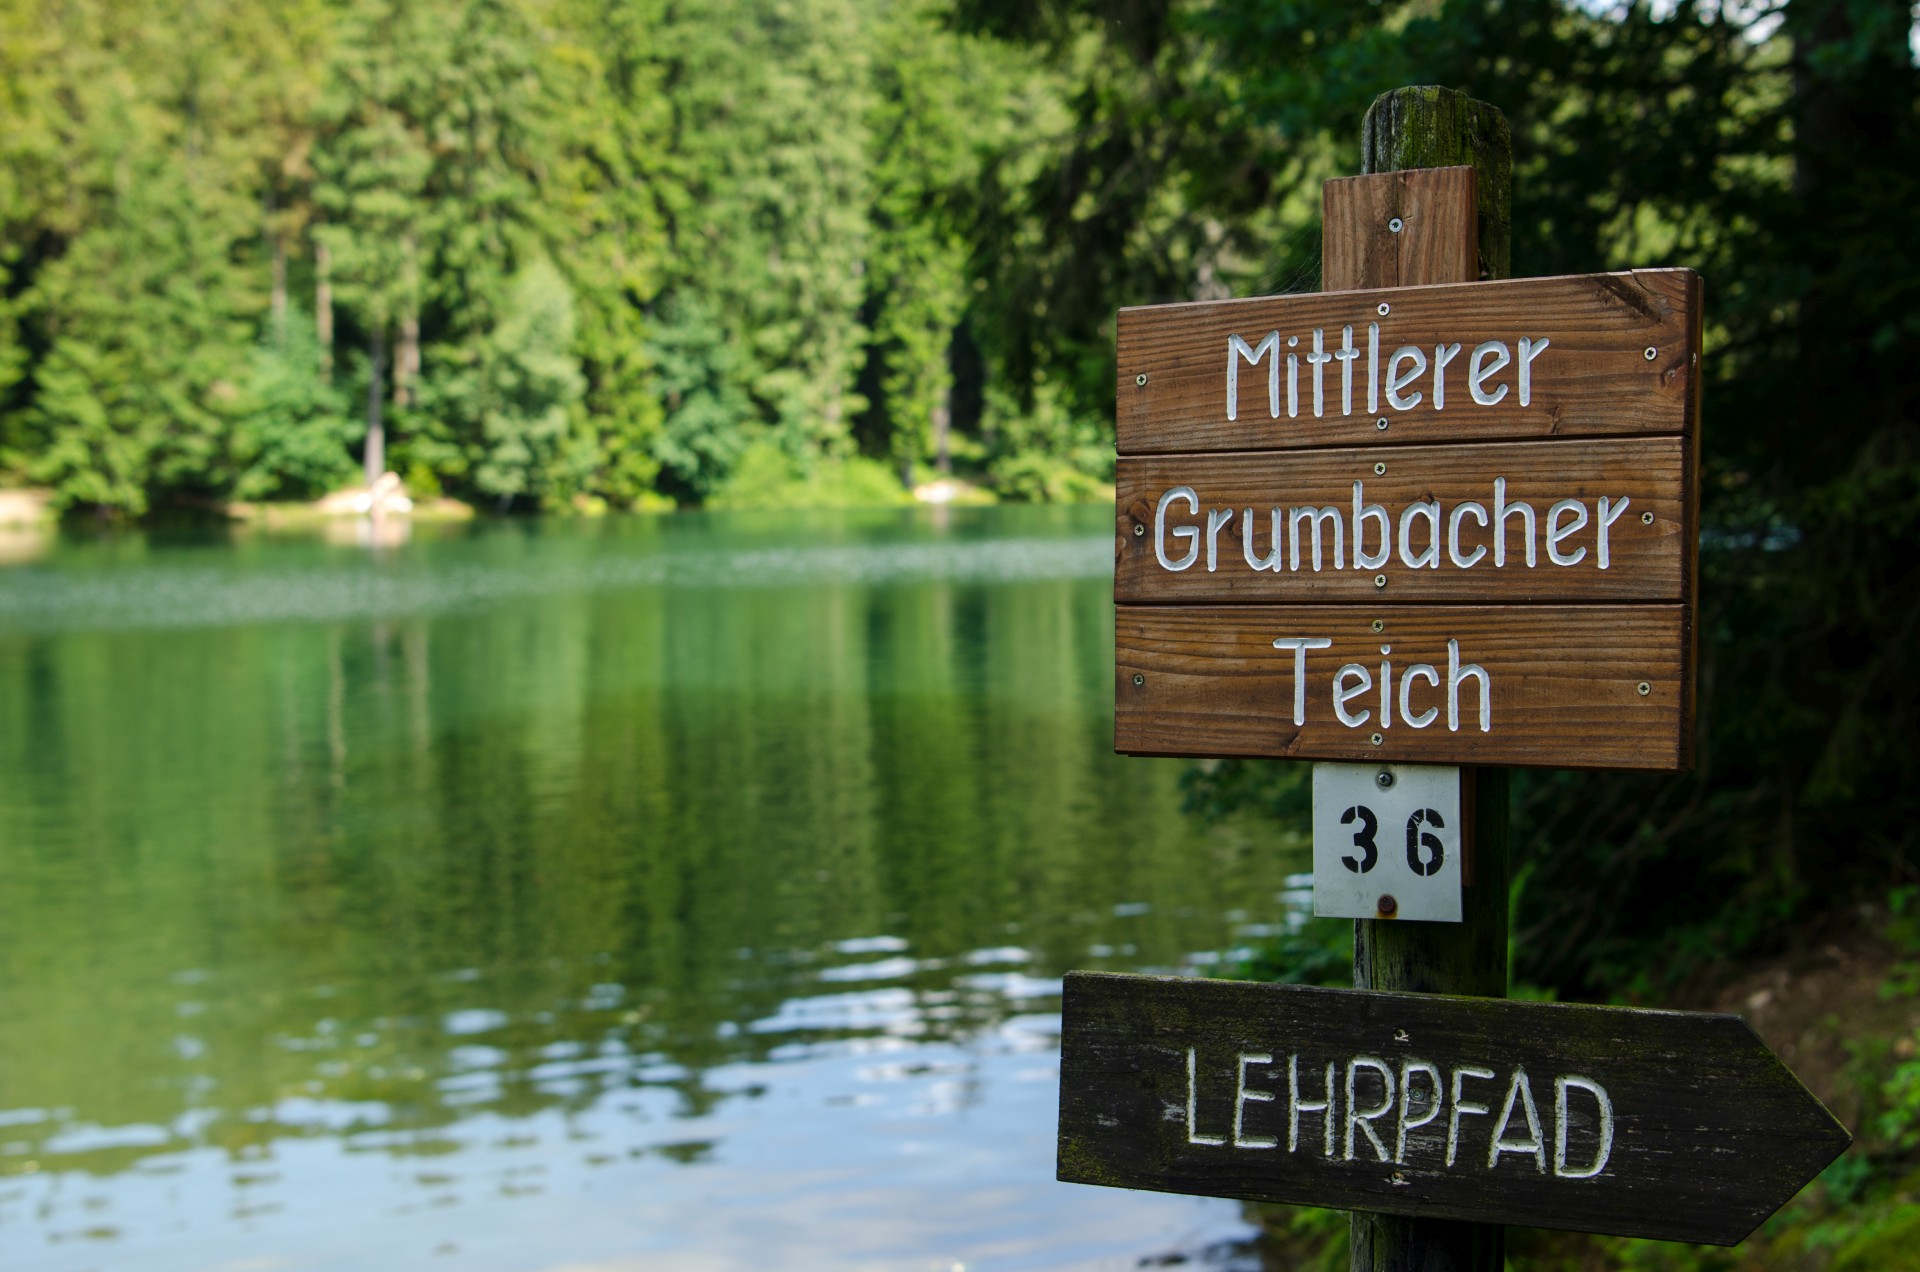 Der mittlere Grumbacher Teich bei Hahnenklee-Auerhahn